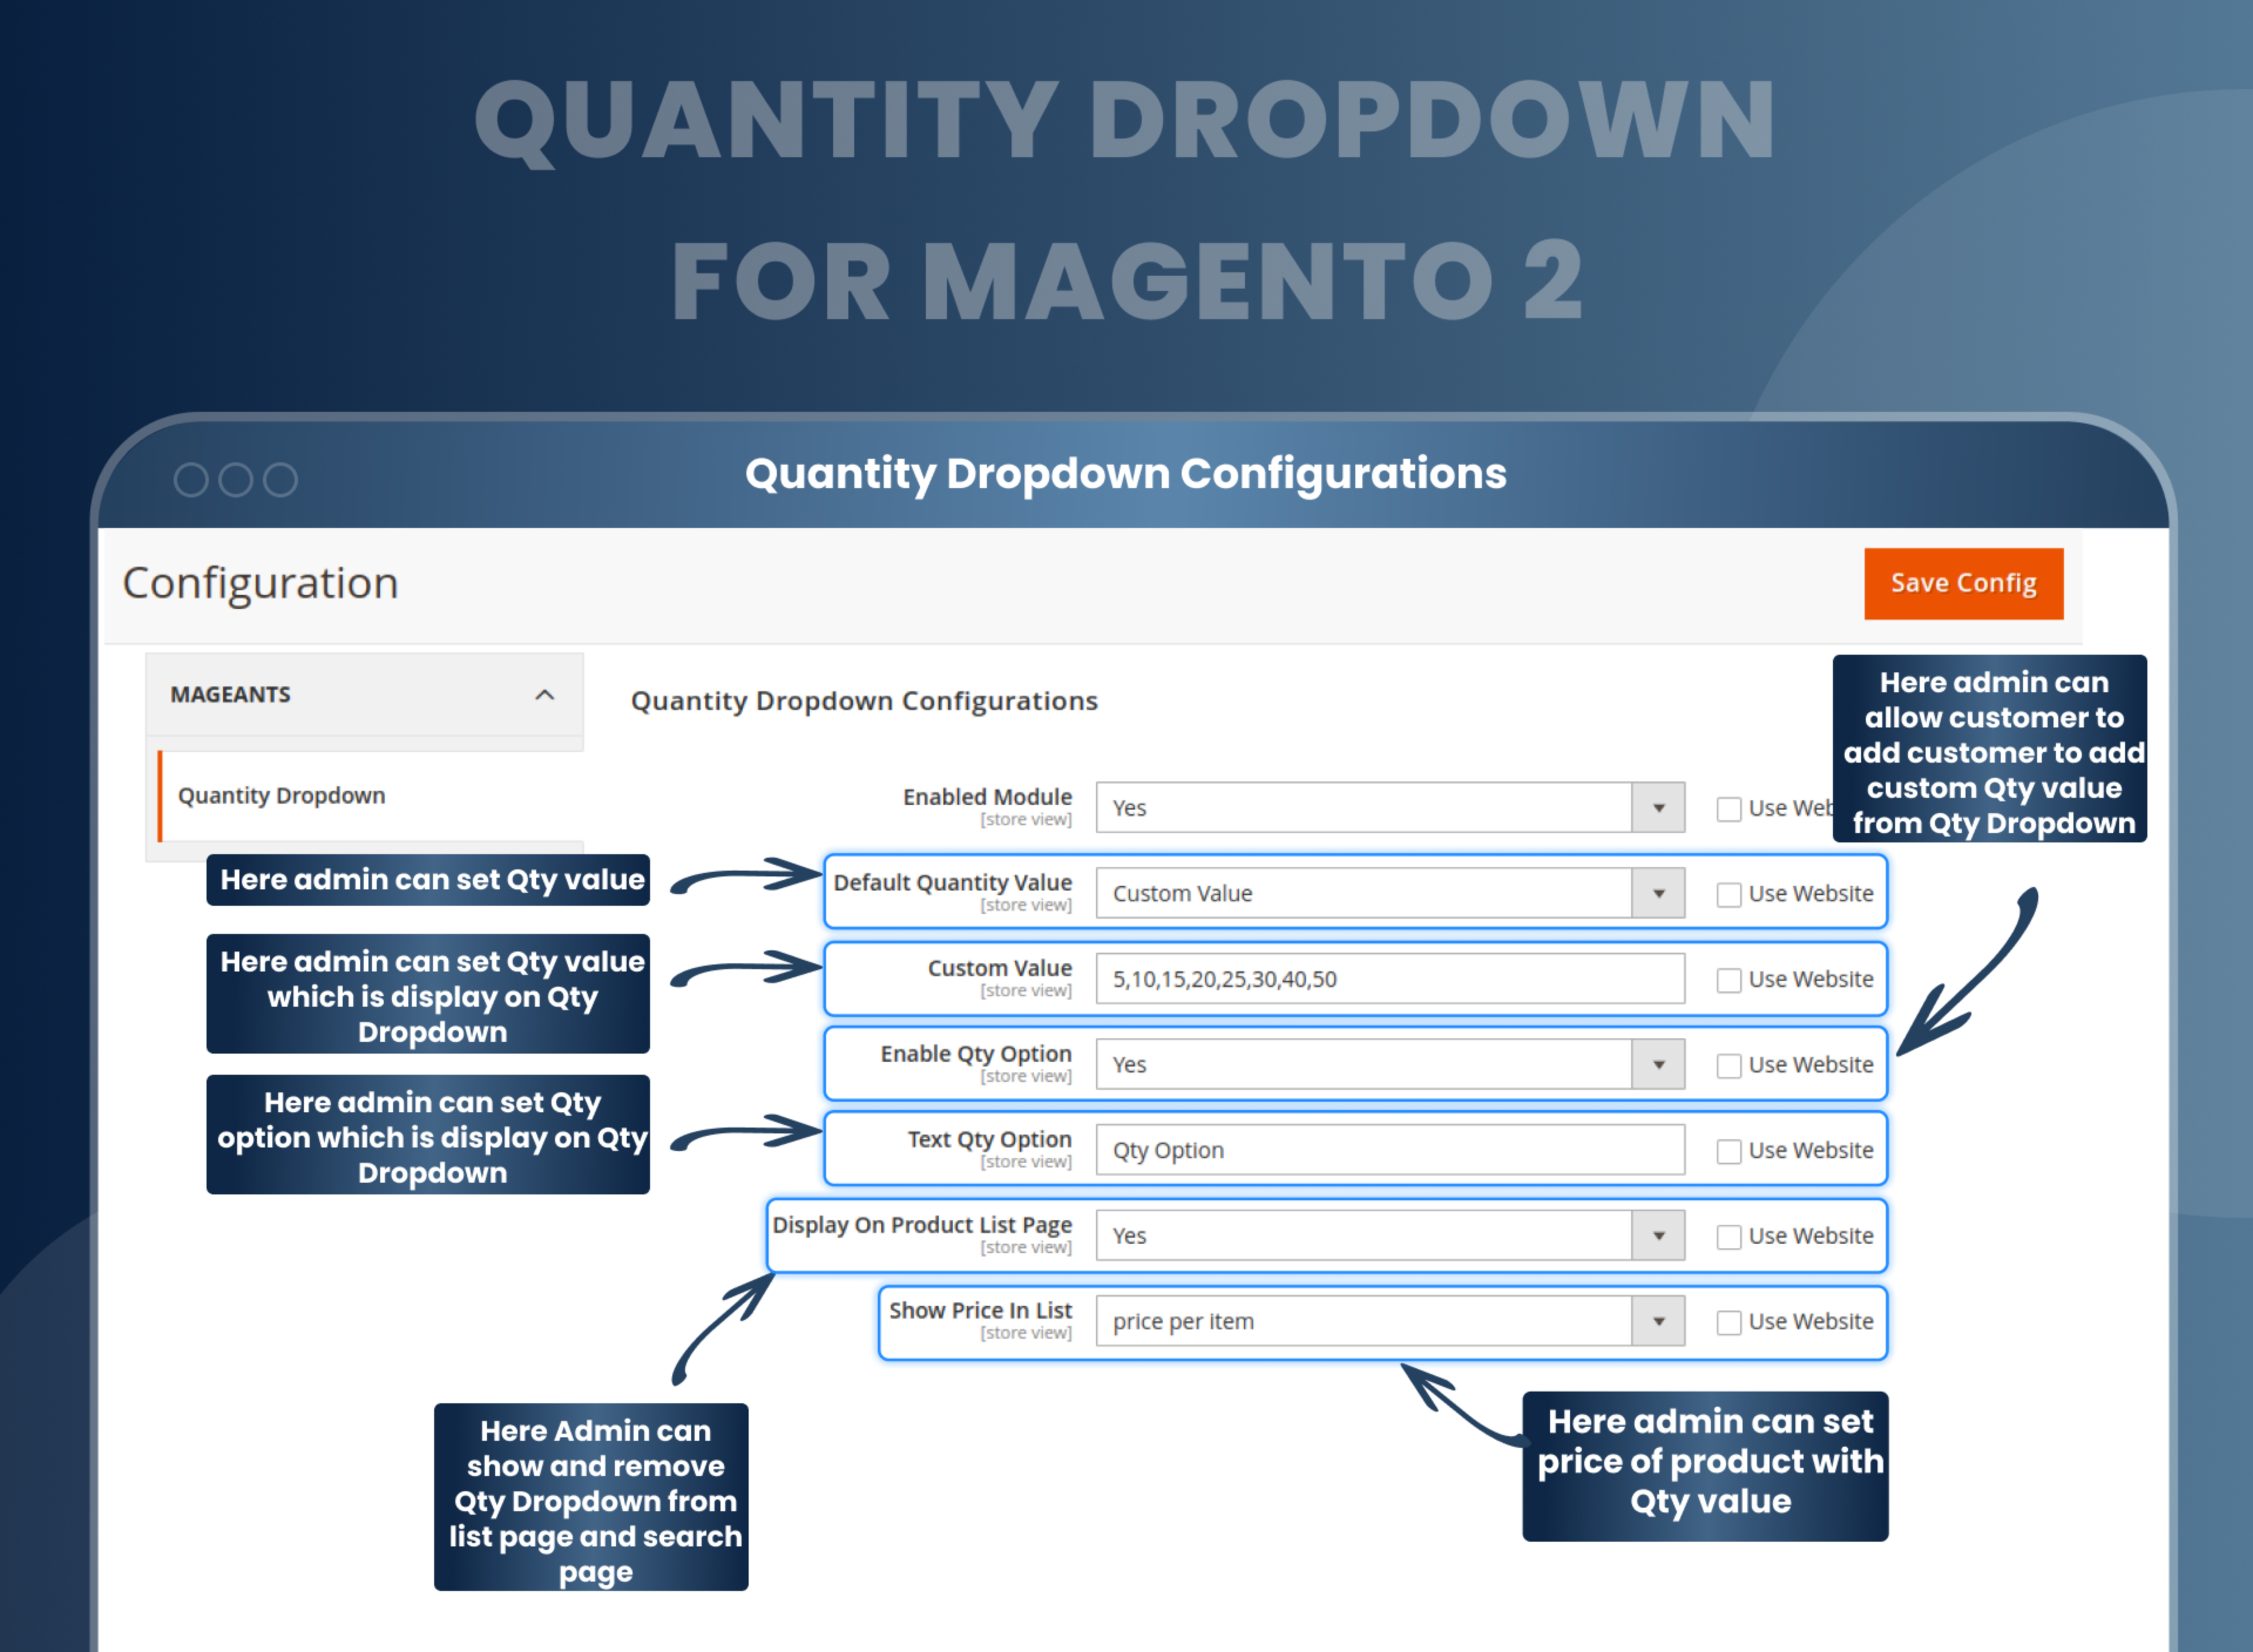 Quantity Dropdown Configurations